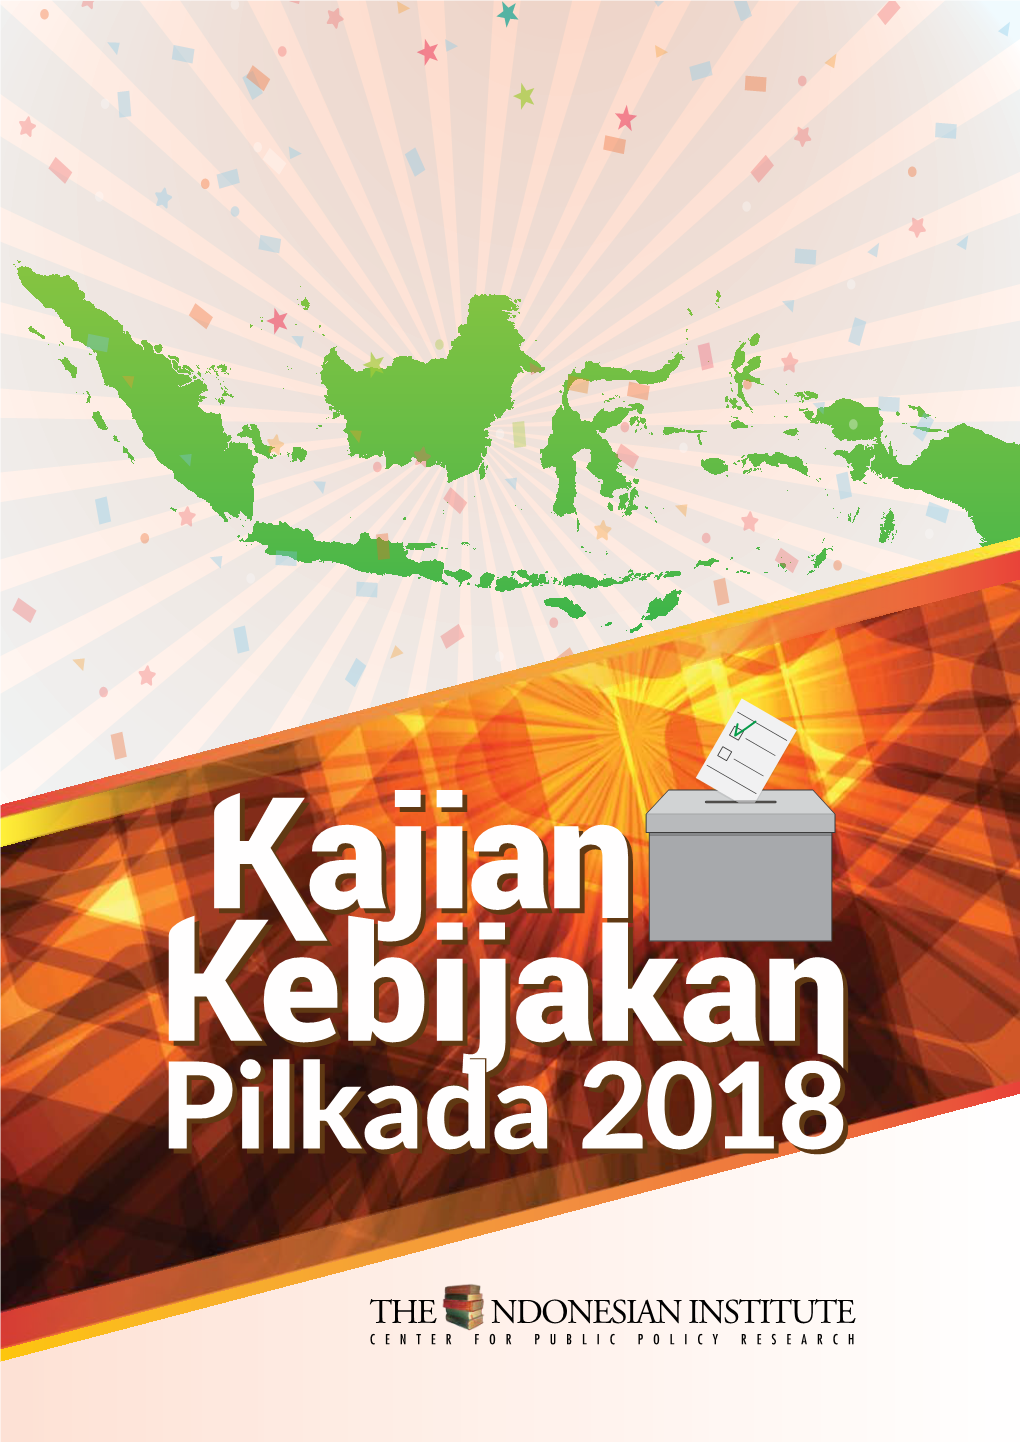 Kajian Kebijakan Pilkada 2018 @2018, the Indonesian Institute